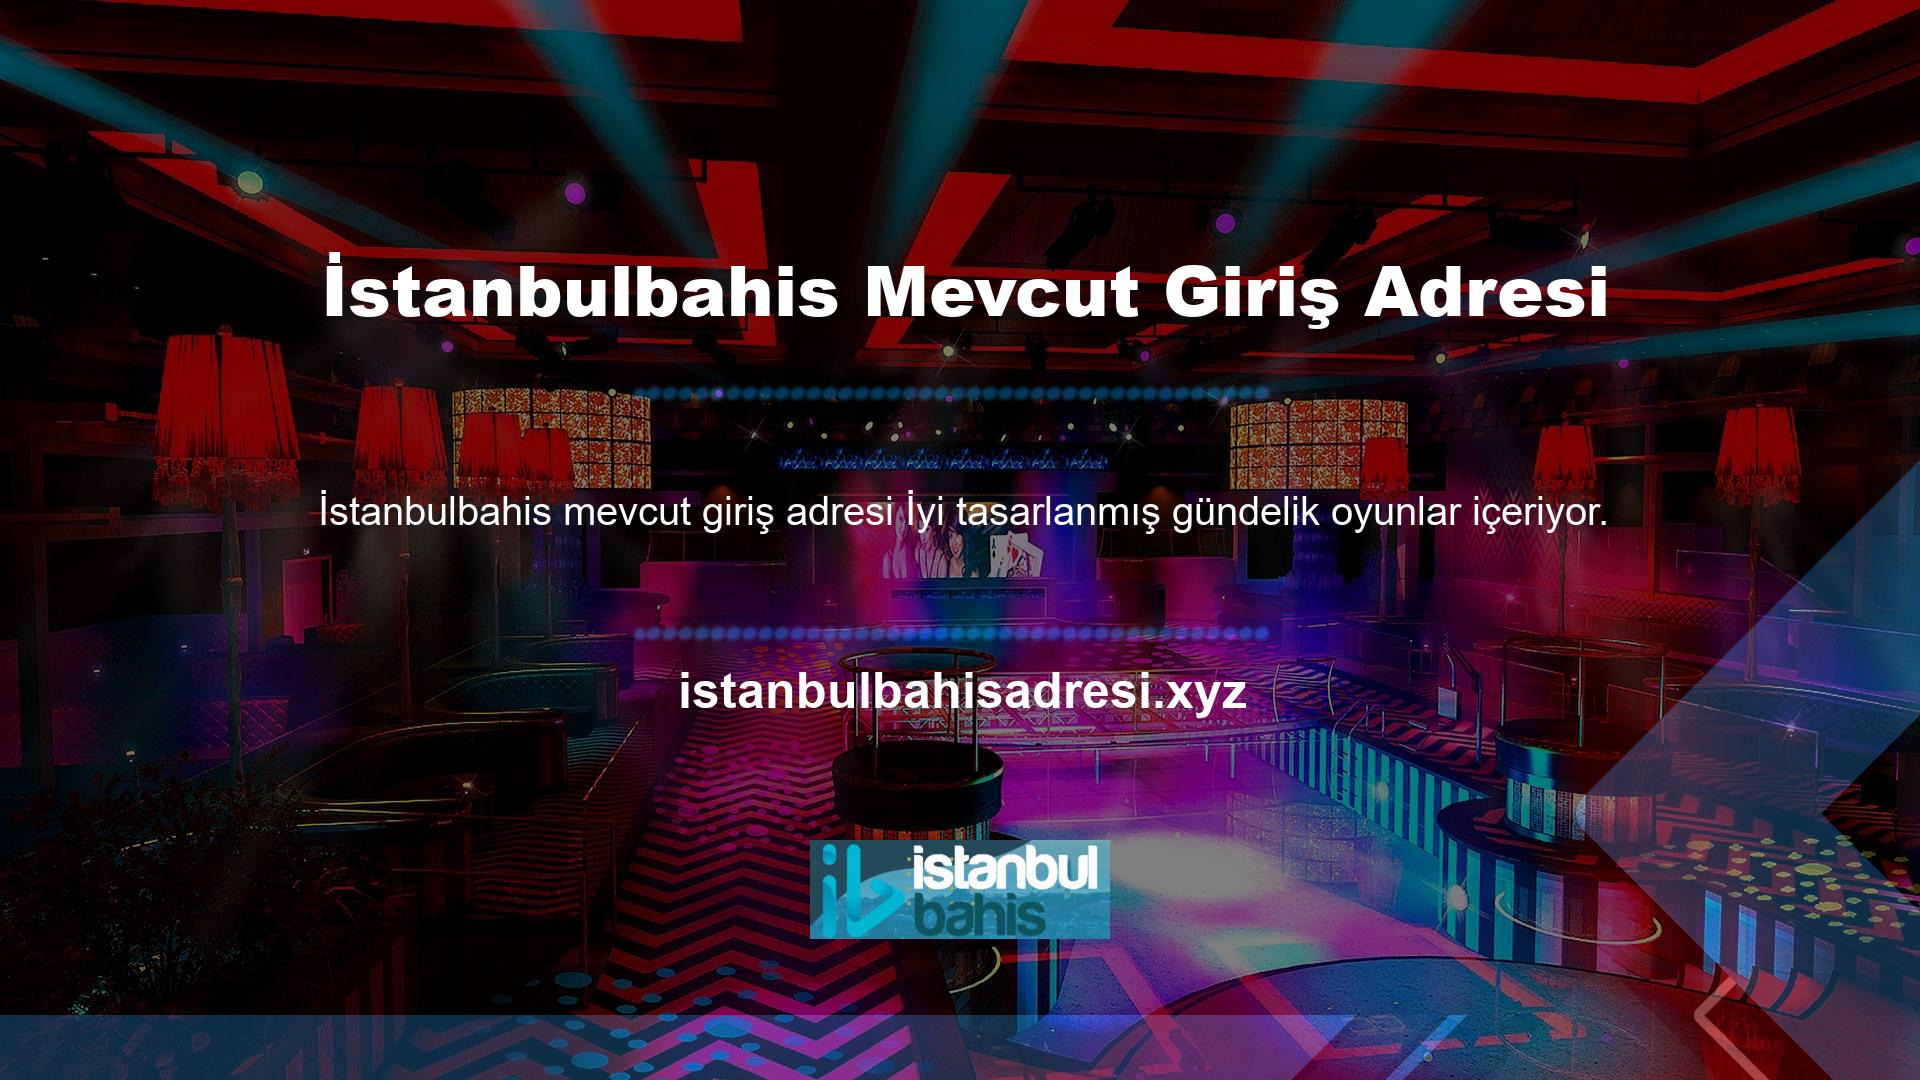 Slot oyunlarını seven oyuncular, İstanbulbahis web sitesine kayıt olduktan hemen sonra kolayca giriş yapabilir ve herhangi bir oyuna bahis oynayabilir